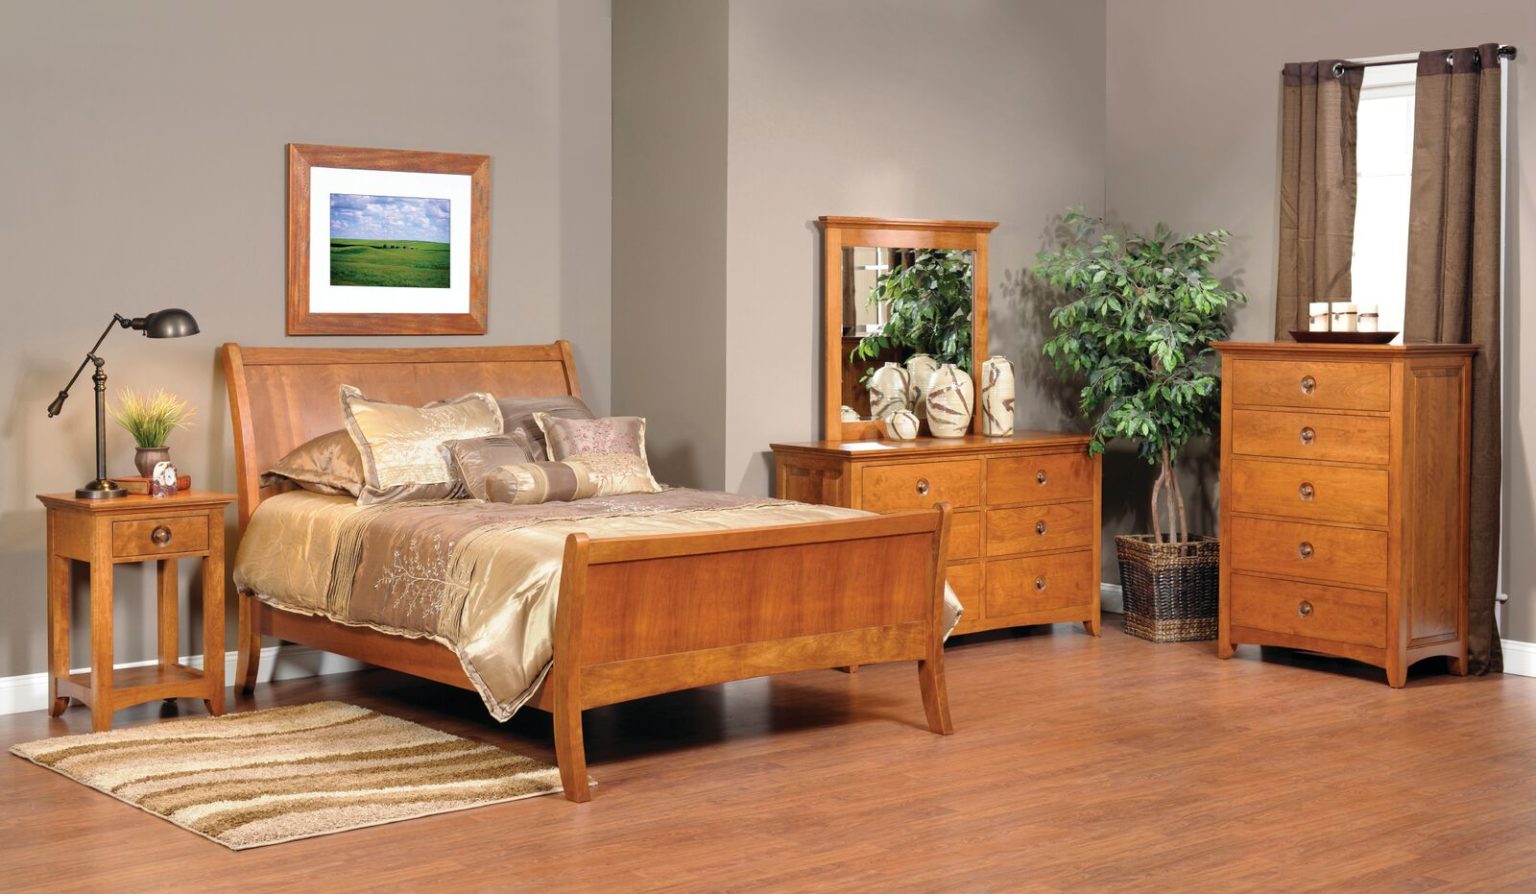 kingston isle bedroom furniture